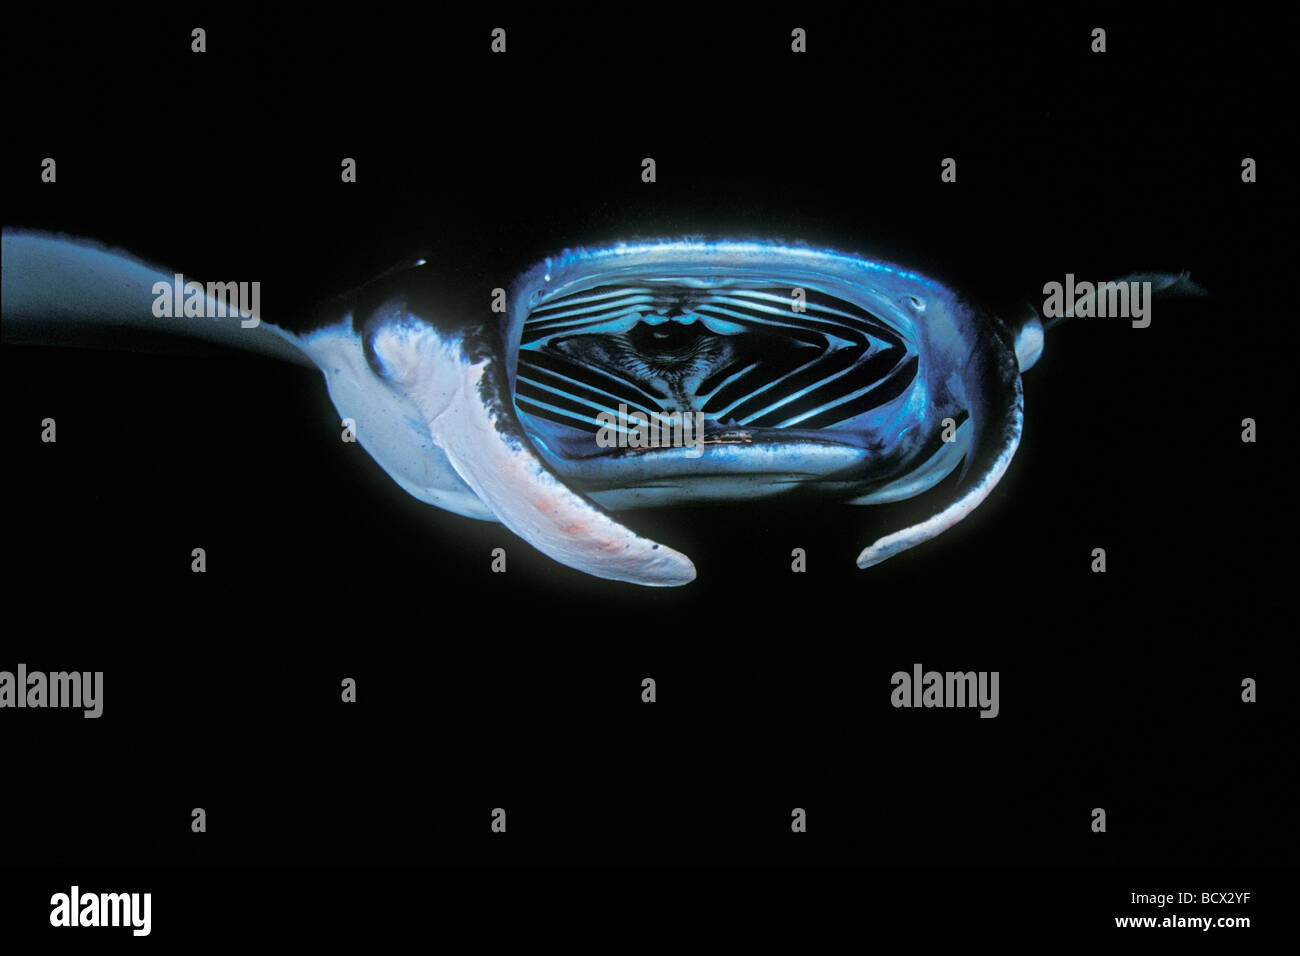 Mante alimentando il plancton di notte, il Manta birostris, Hawaii, USA, Kona, Big Island, Oceano Pacifico Foto Stock